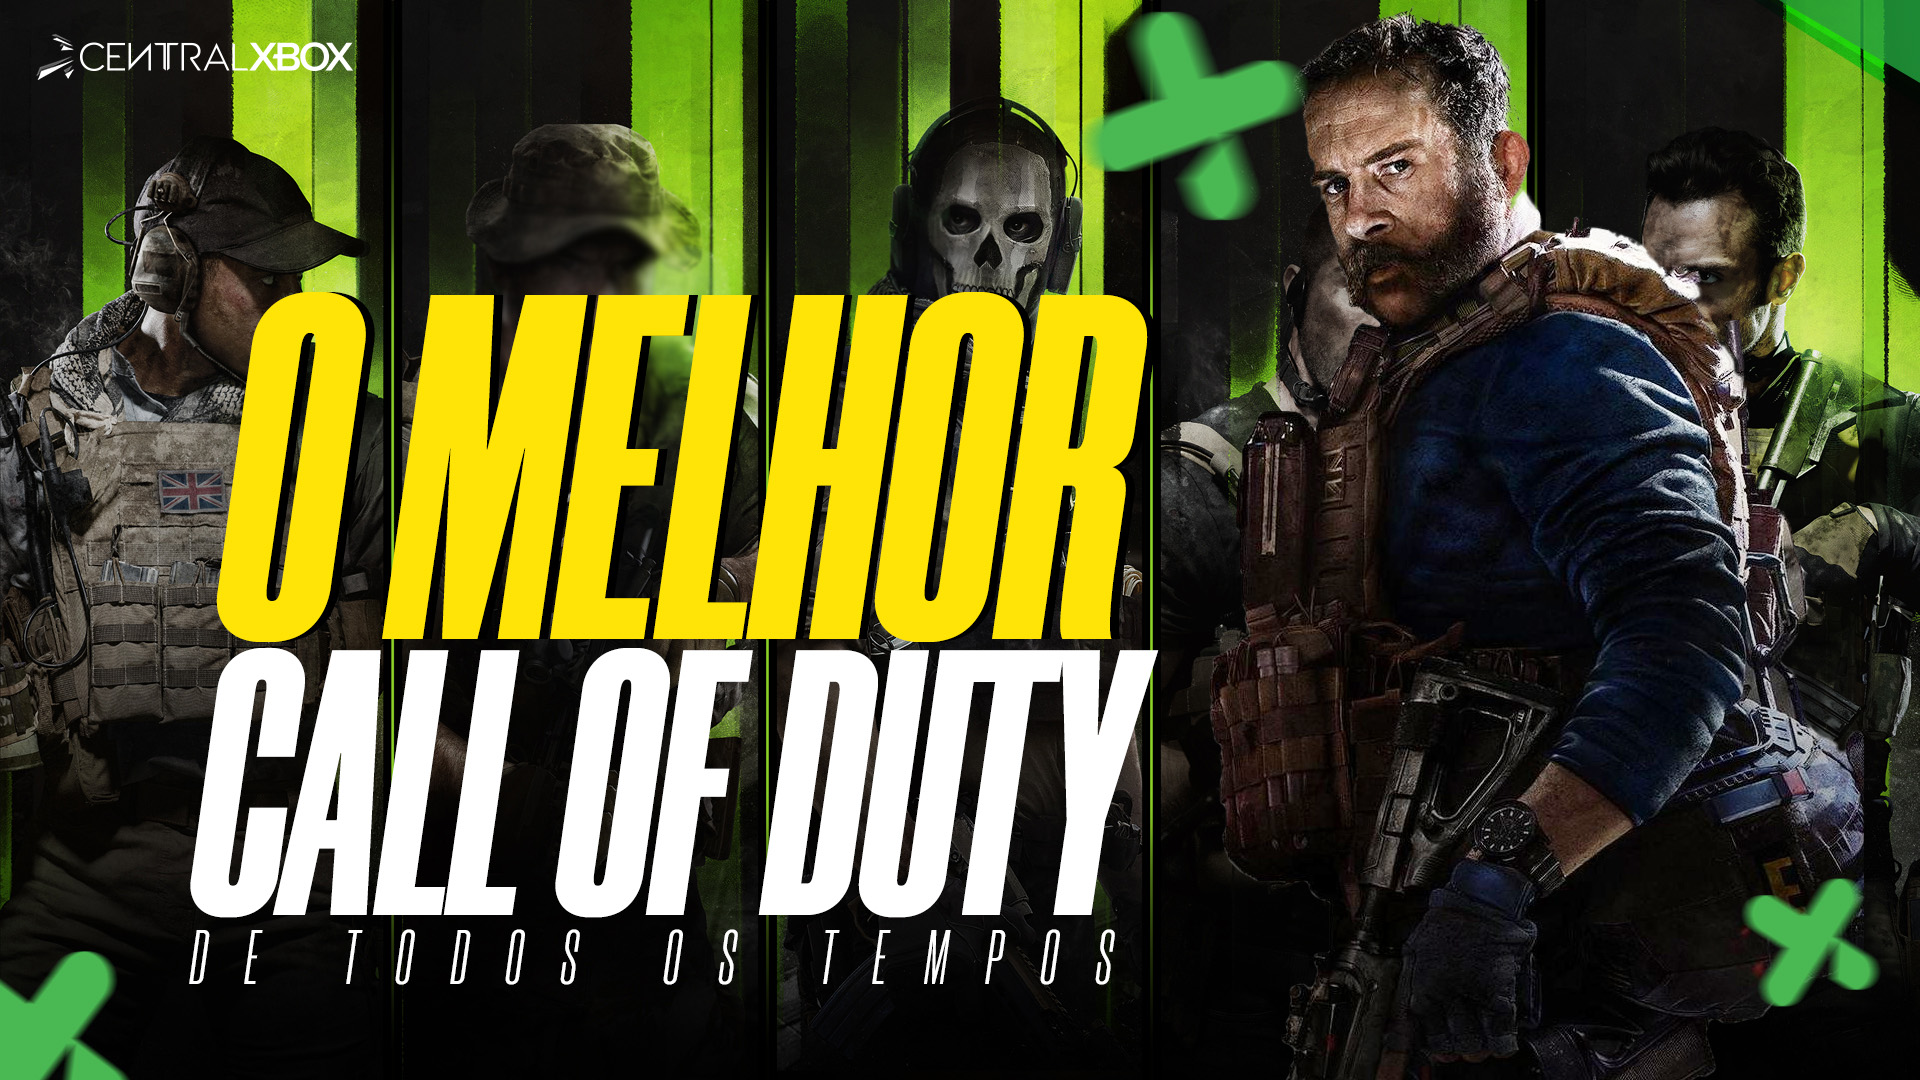 Call of Duty exclusivo não seria rentável, diz Microsoft